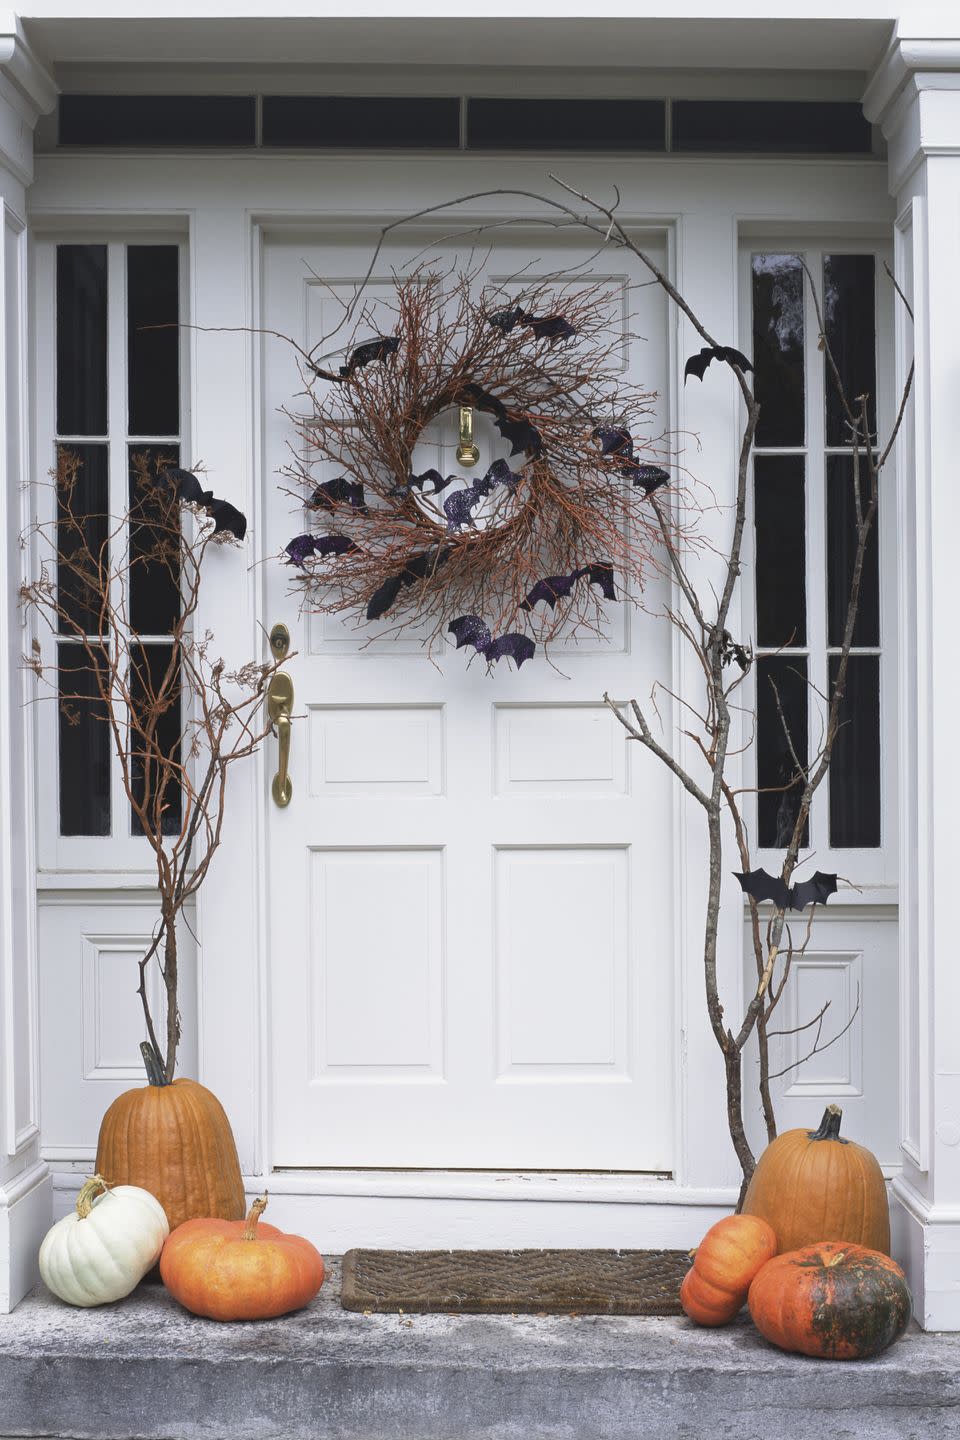 Hang a rustic spooky wreath from your door.